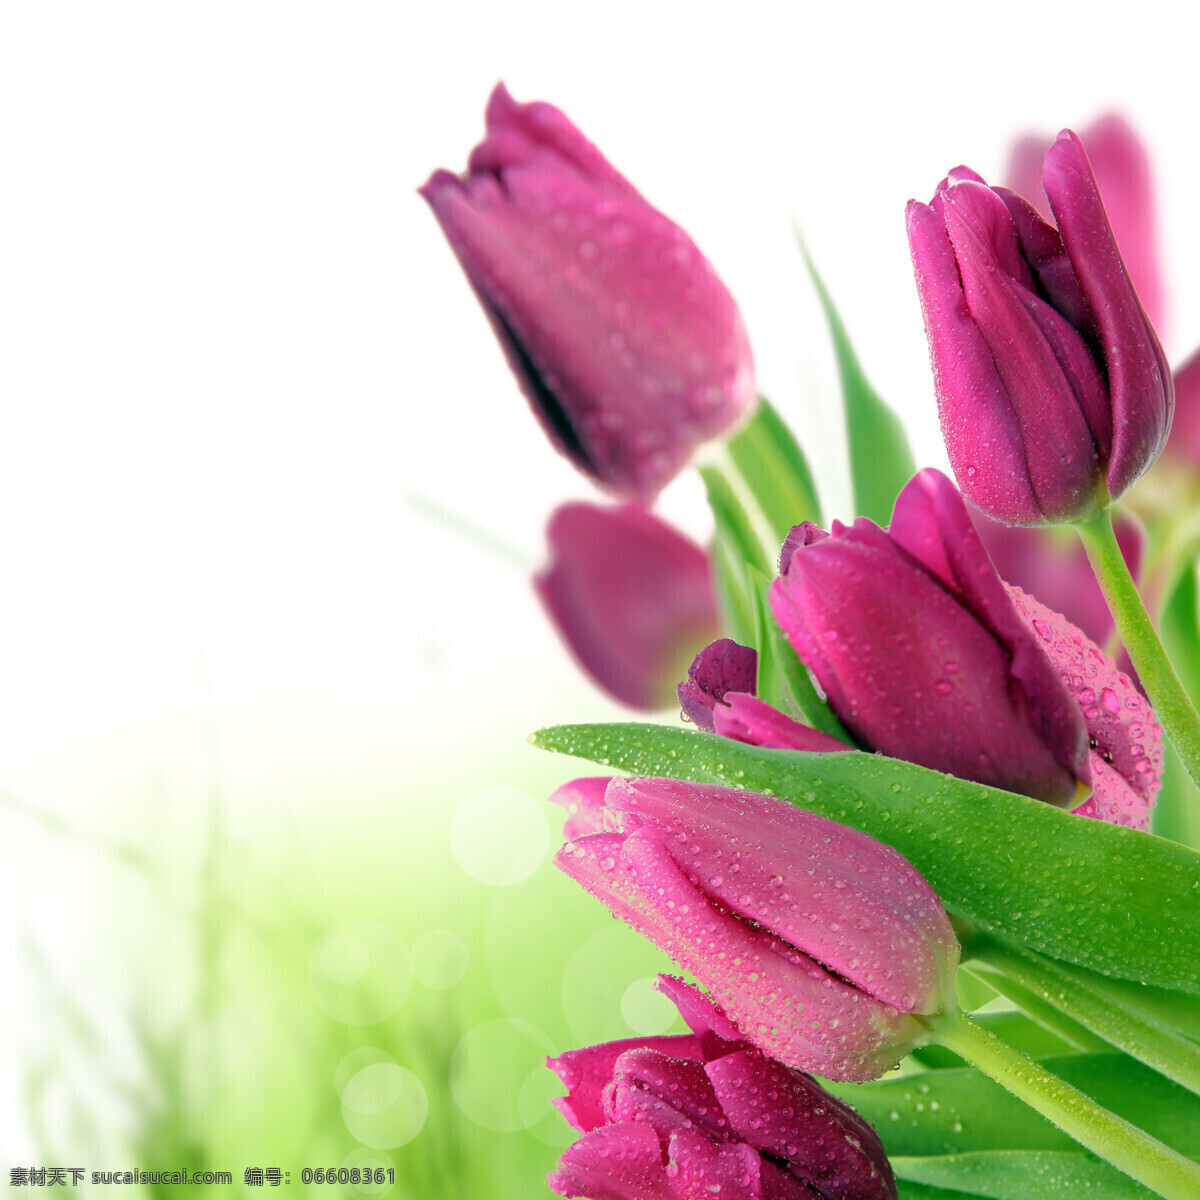 妖艳 郁金香 紫色 鲜艳 花朵 花卉 鲜花 水珠 高清图片 花草树木 生物世界 白色